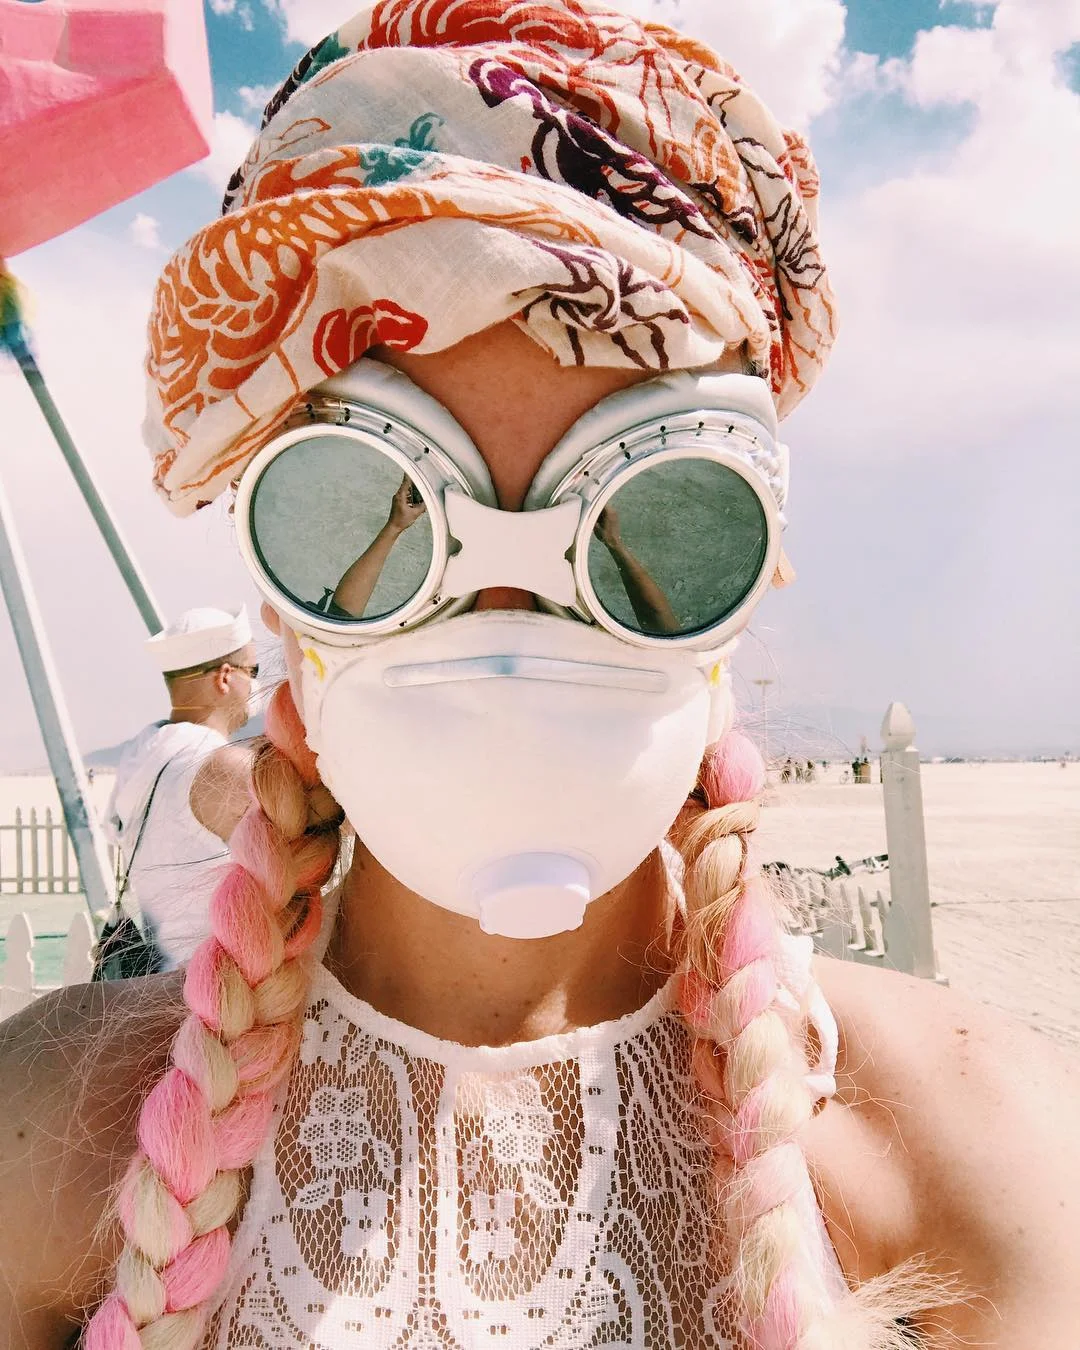 Пыль, голые тела и современное искусство: крутые фото с фестиваля Burning Man 2017 - фото 336428